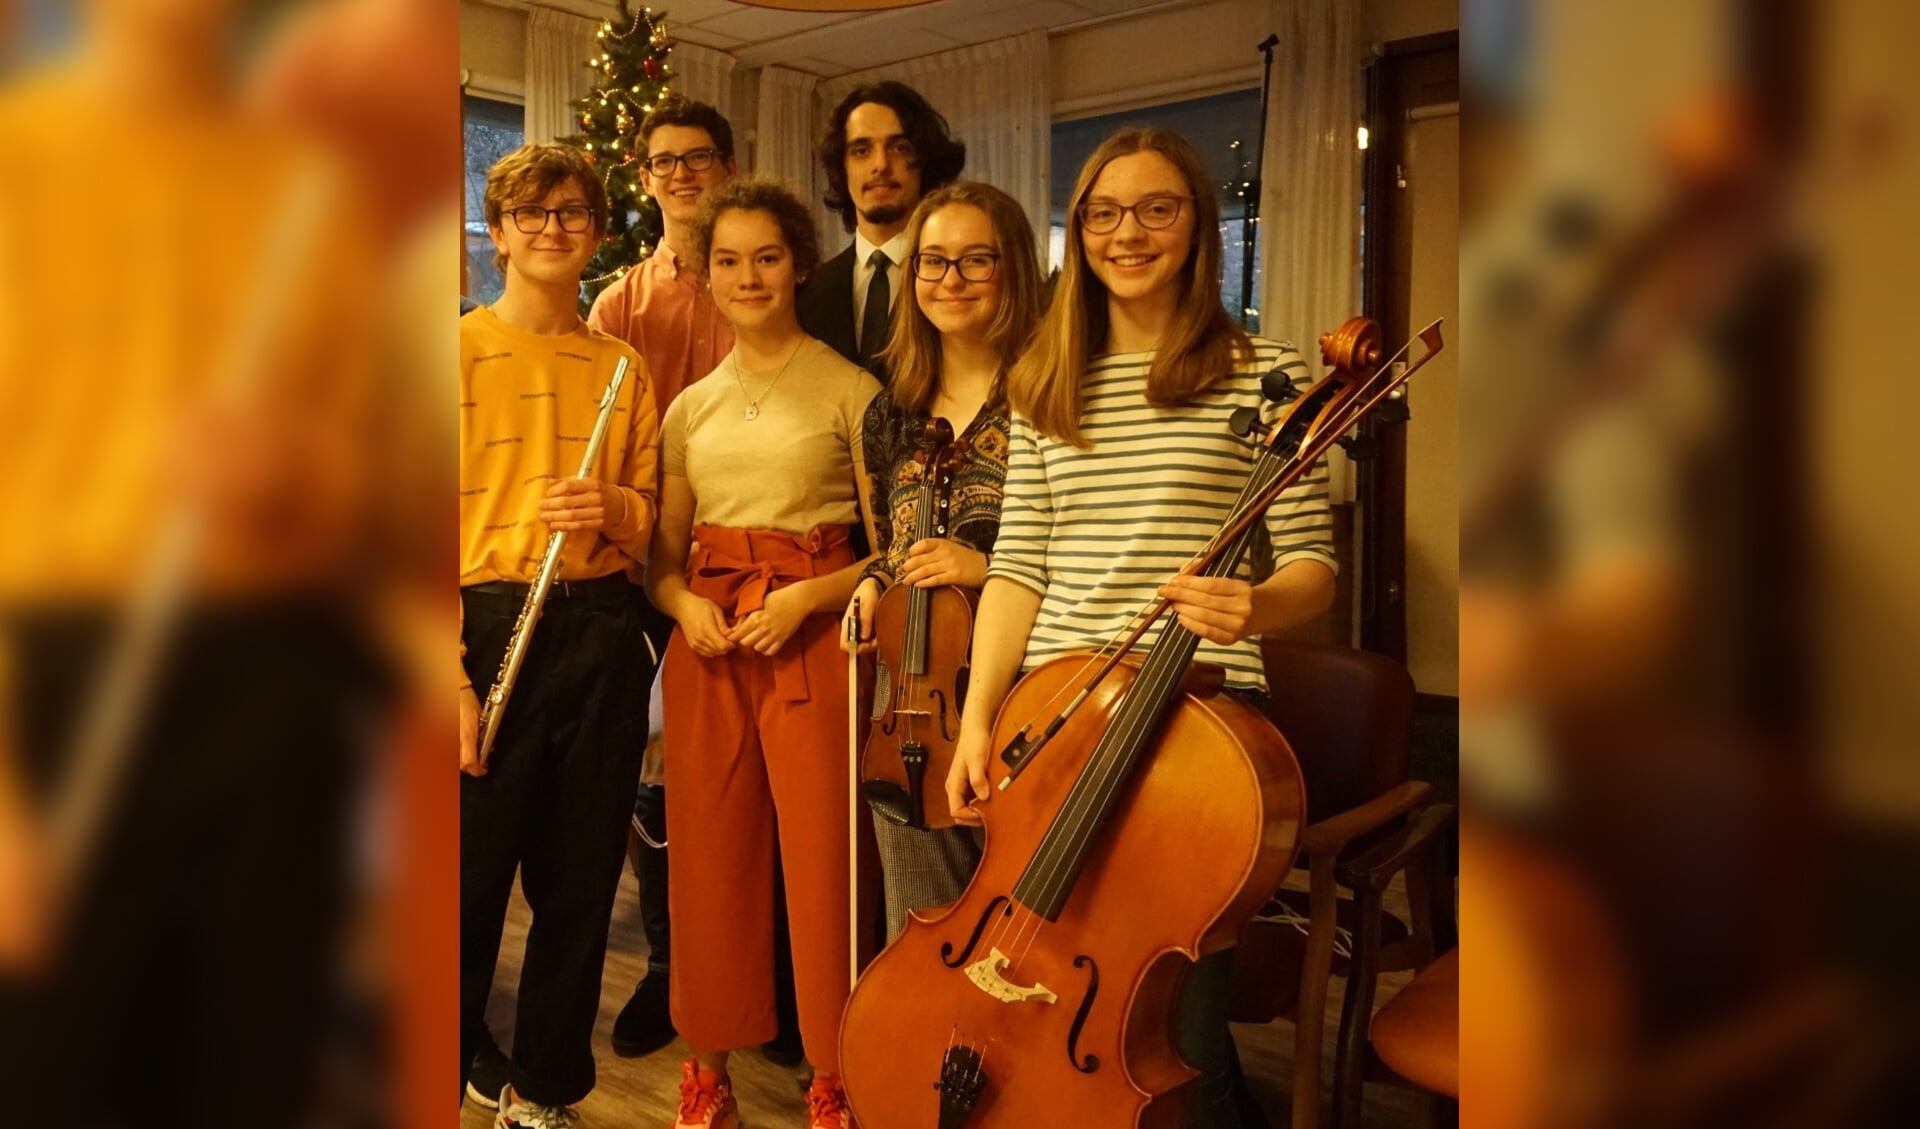 Muzikale leerlingen van de British School lieten senioren genieten van kerstmuziek